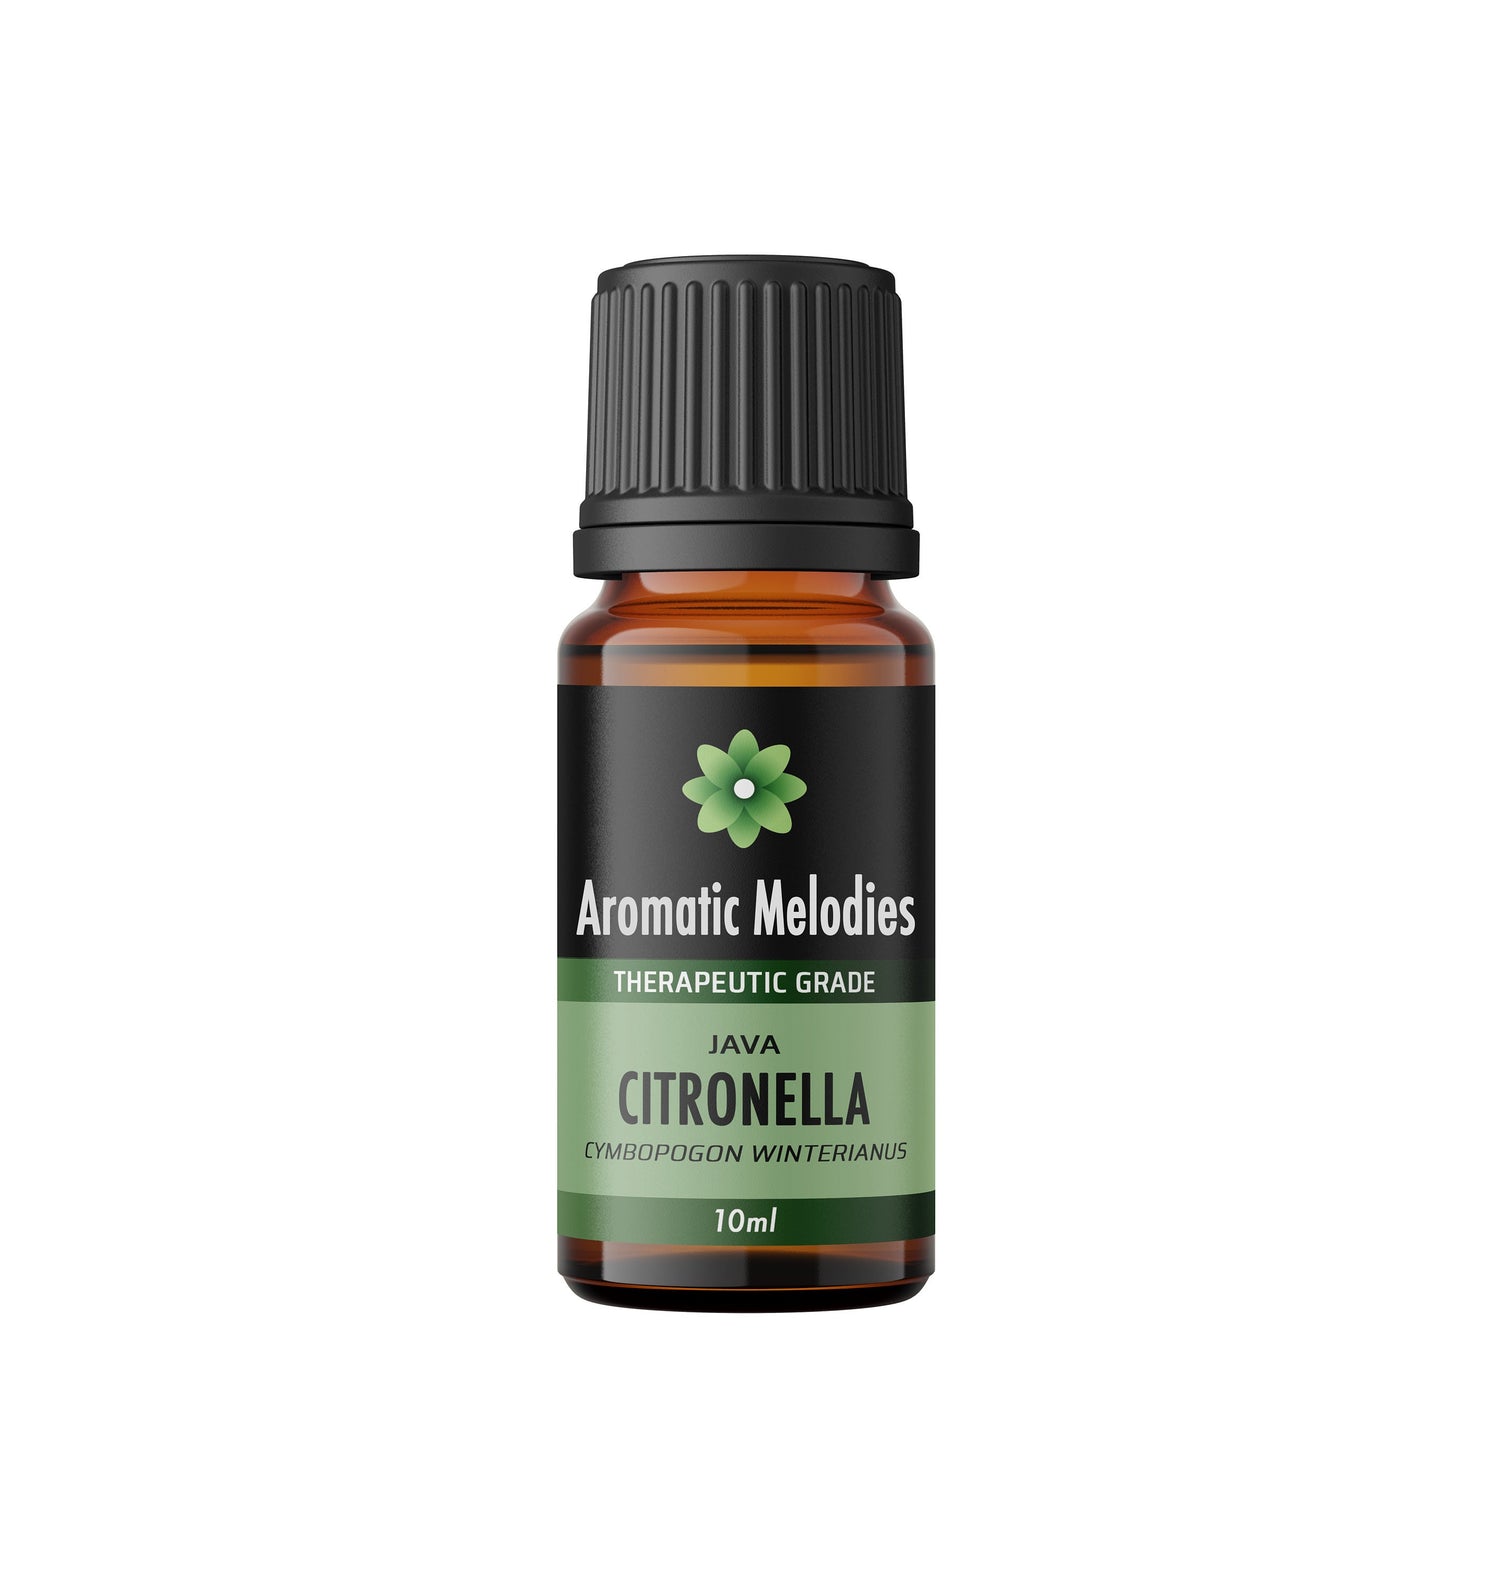 Citronella (Java) Essential Oil - Premium 100% Natural Therapeutic Grade - Oil Diffuser, Massage, Fragrance, Soap, Candles